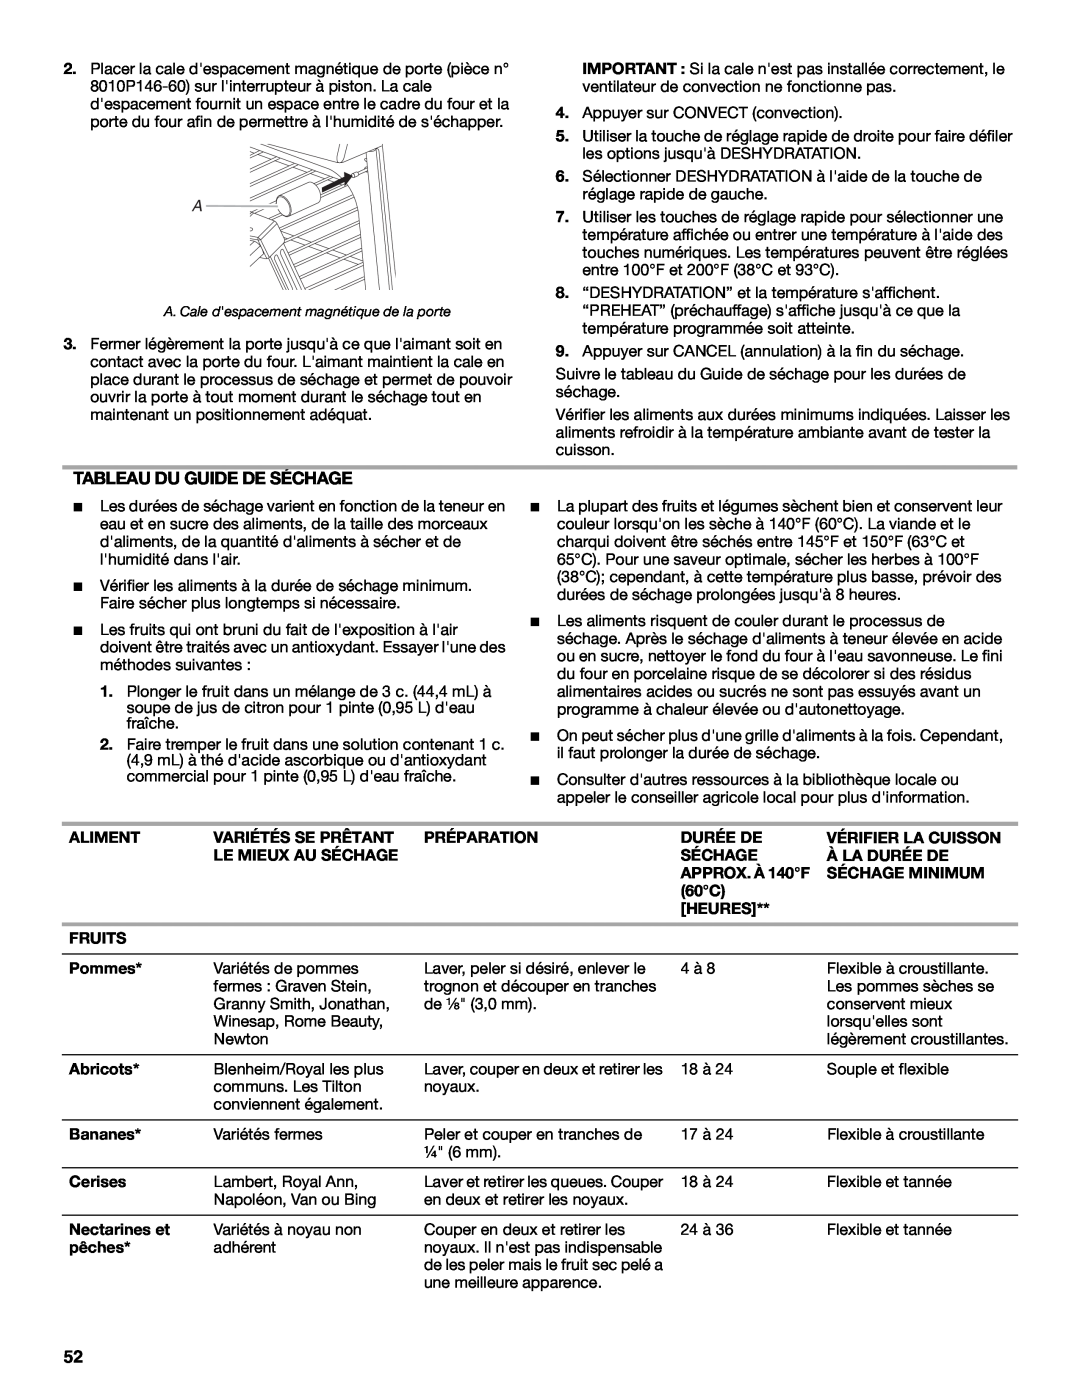 Jenn-Air JDS9865 manual Tableau Du Guide De Séchage 